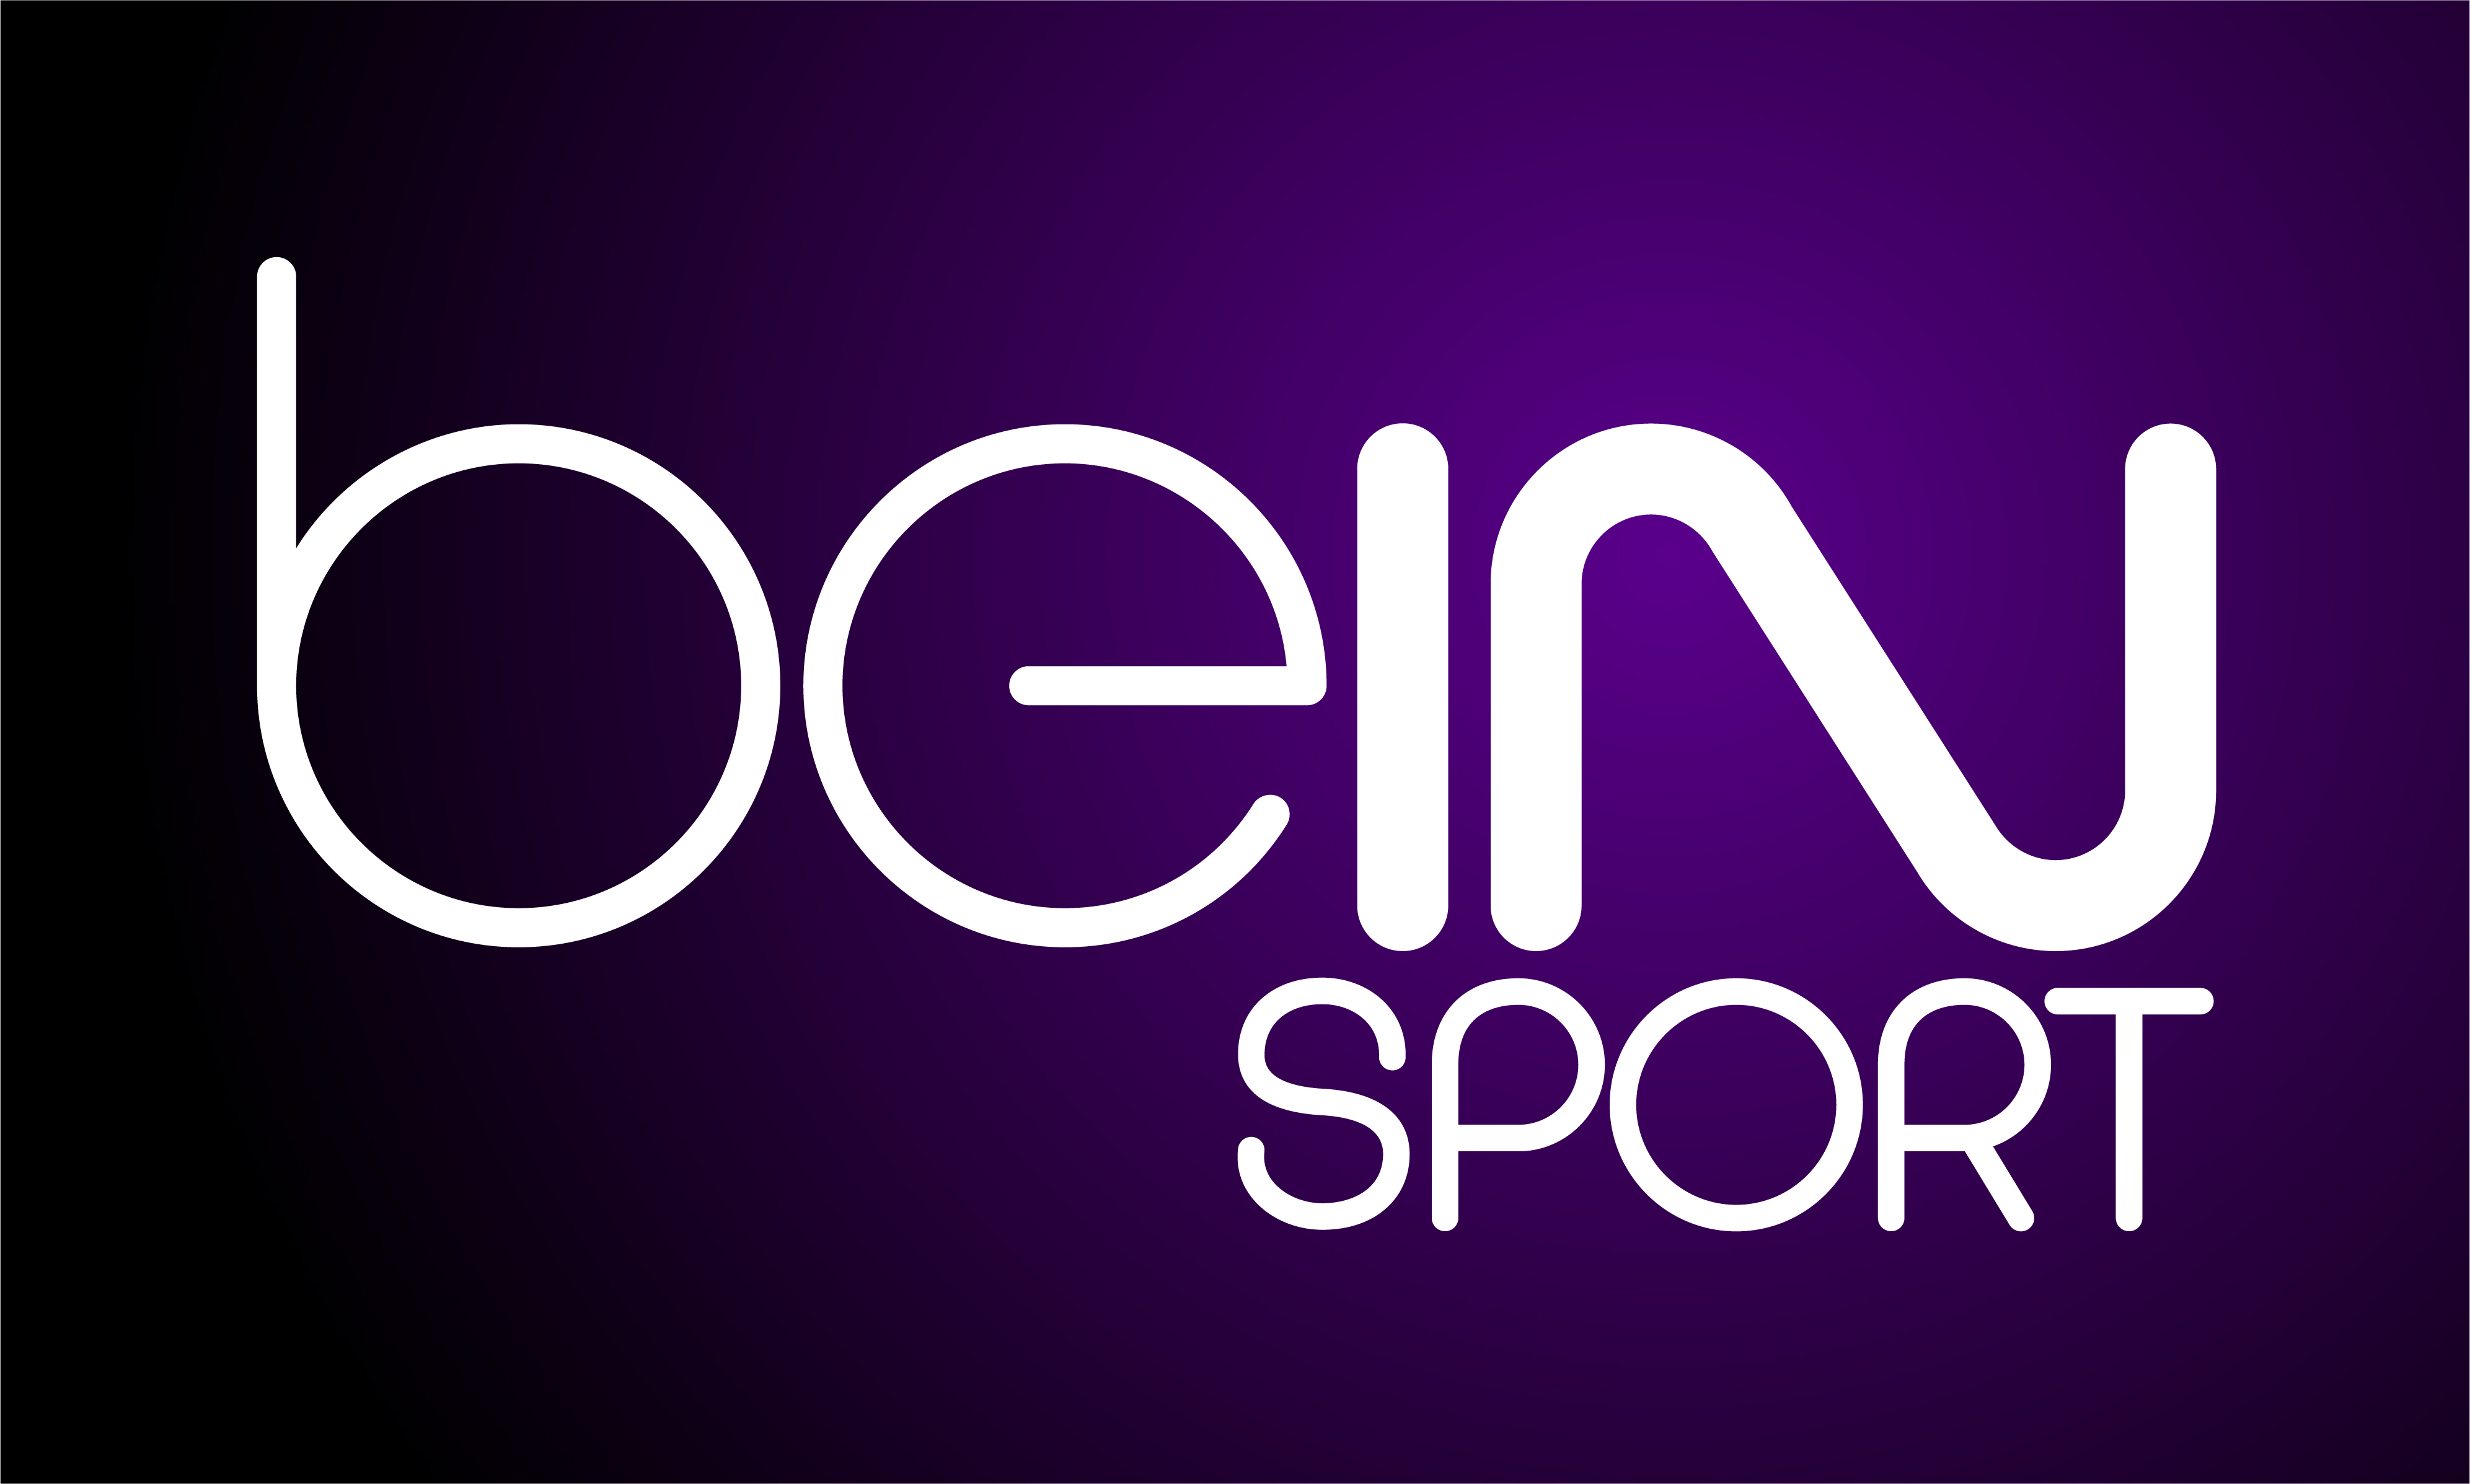 Bein sports 3 sport. Bein. Bein Sport logo. Bein Sports TV логотип. Лого Беин Спортс.